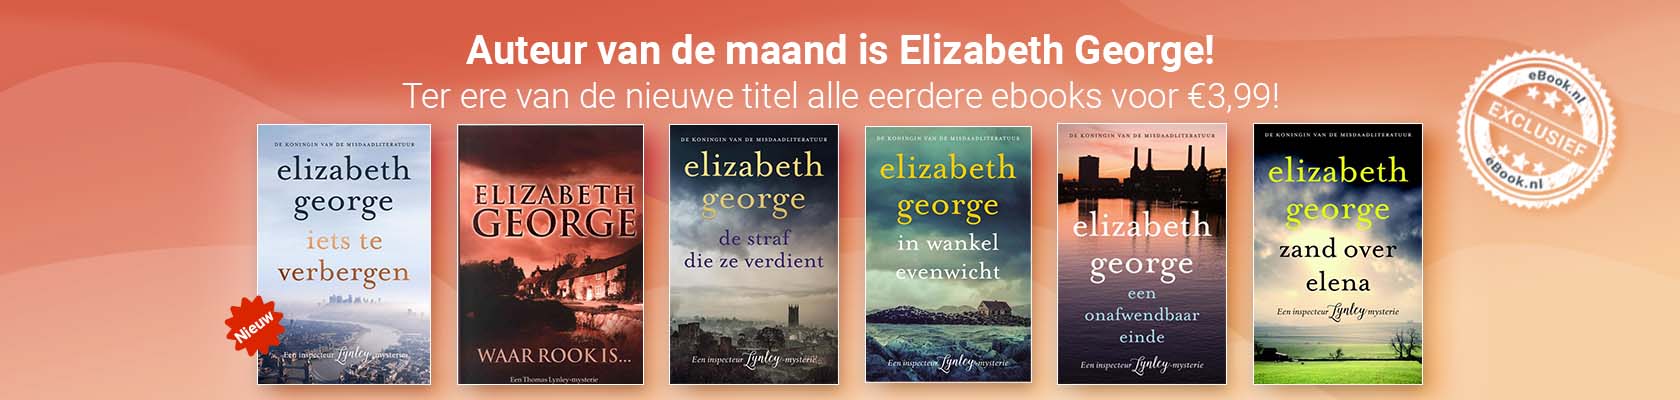 Auteur van de maand: Elizabeth George